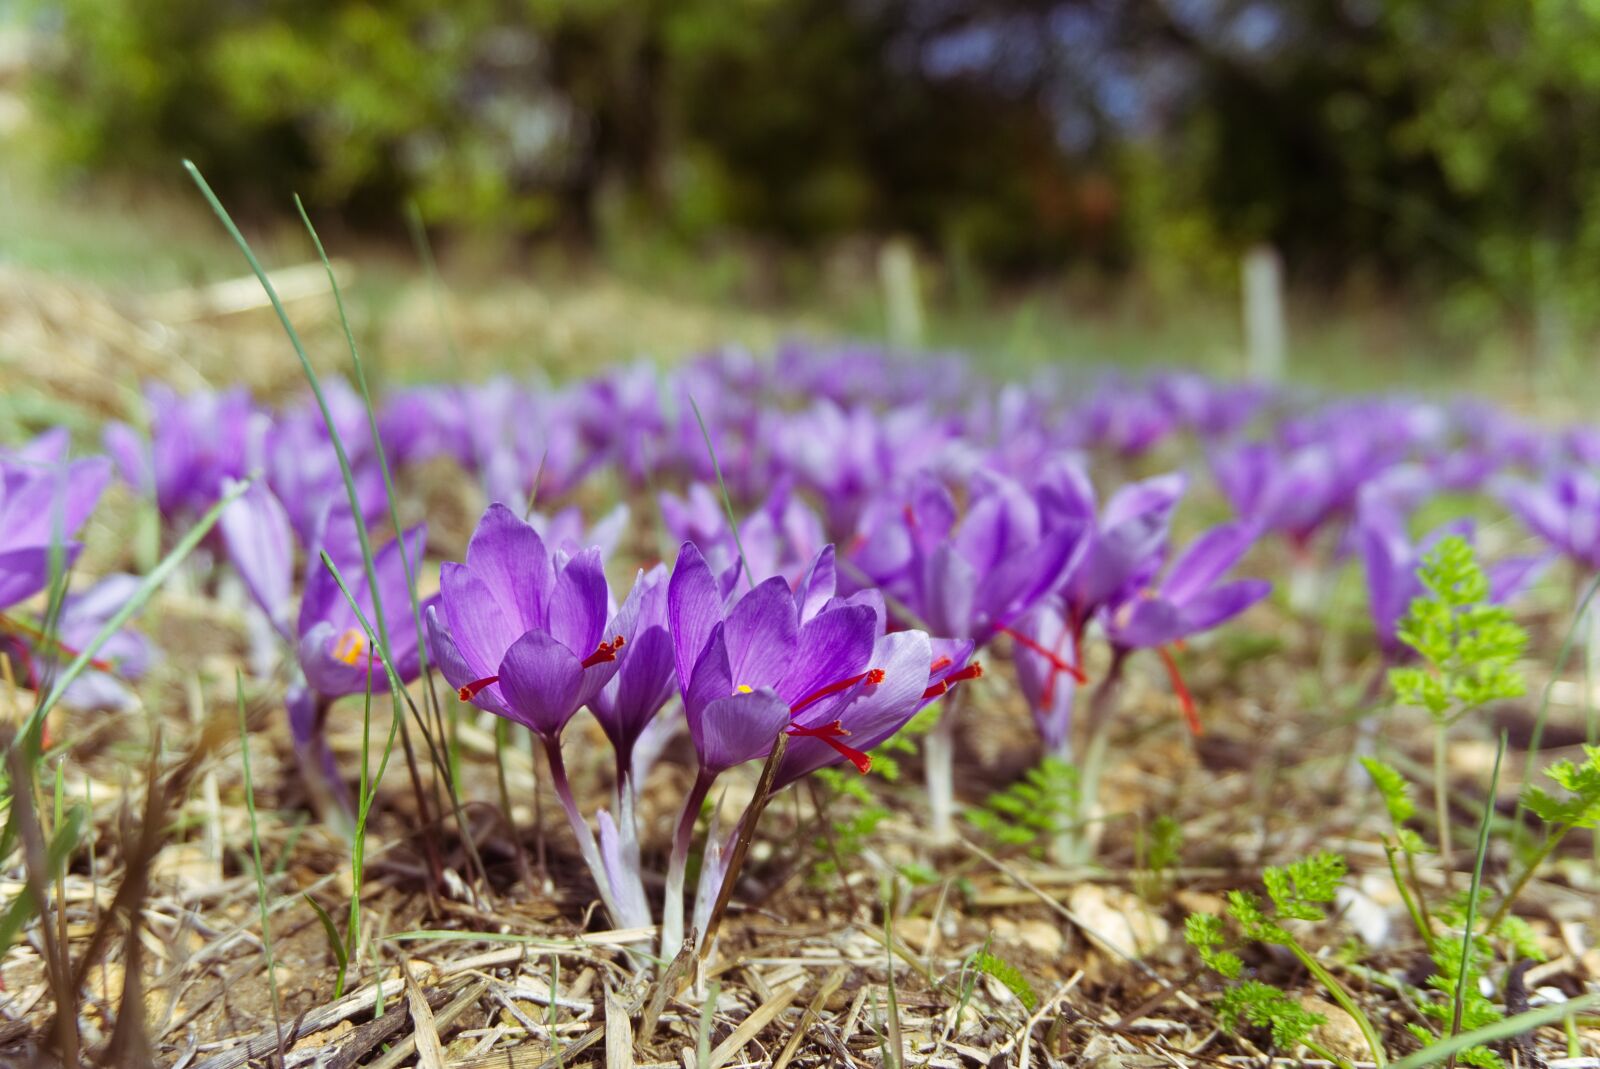 Sony a6000 sample photo. Saffron, crocus sativus, saffron photography